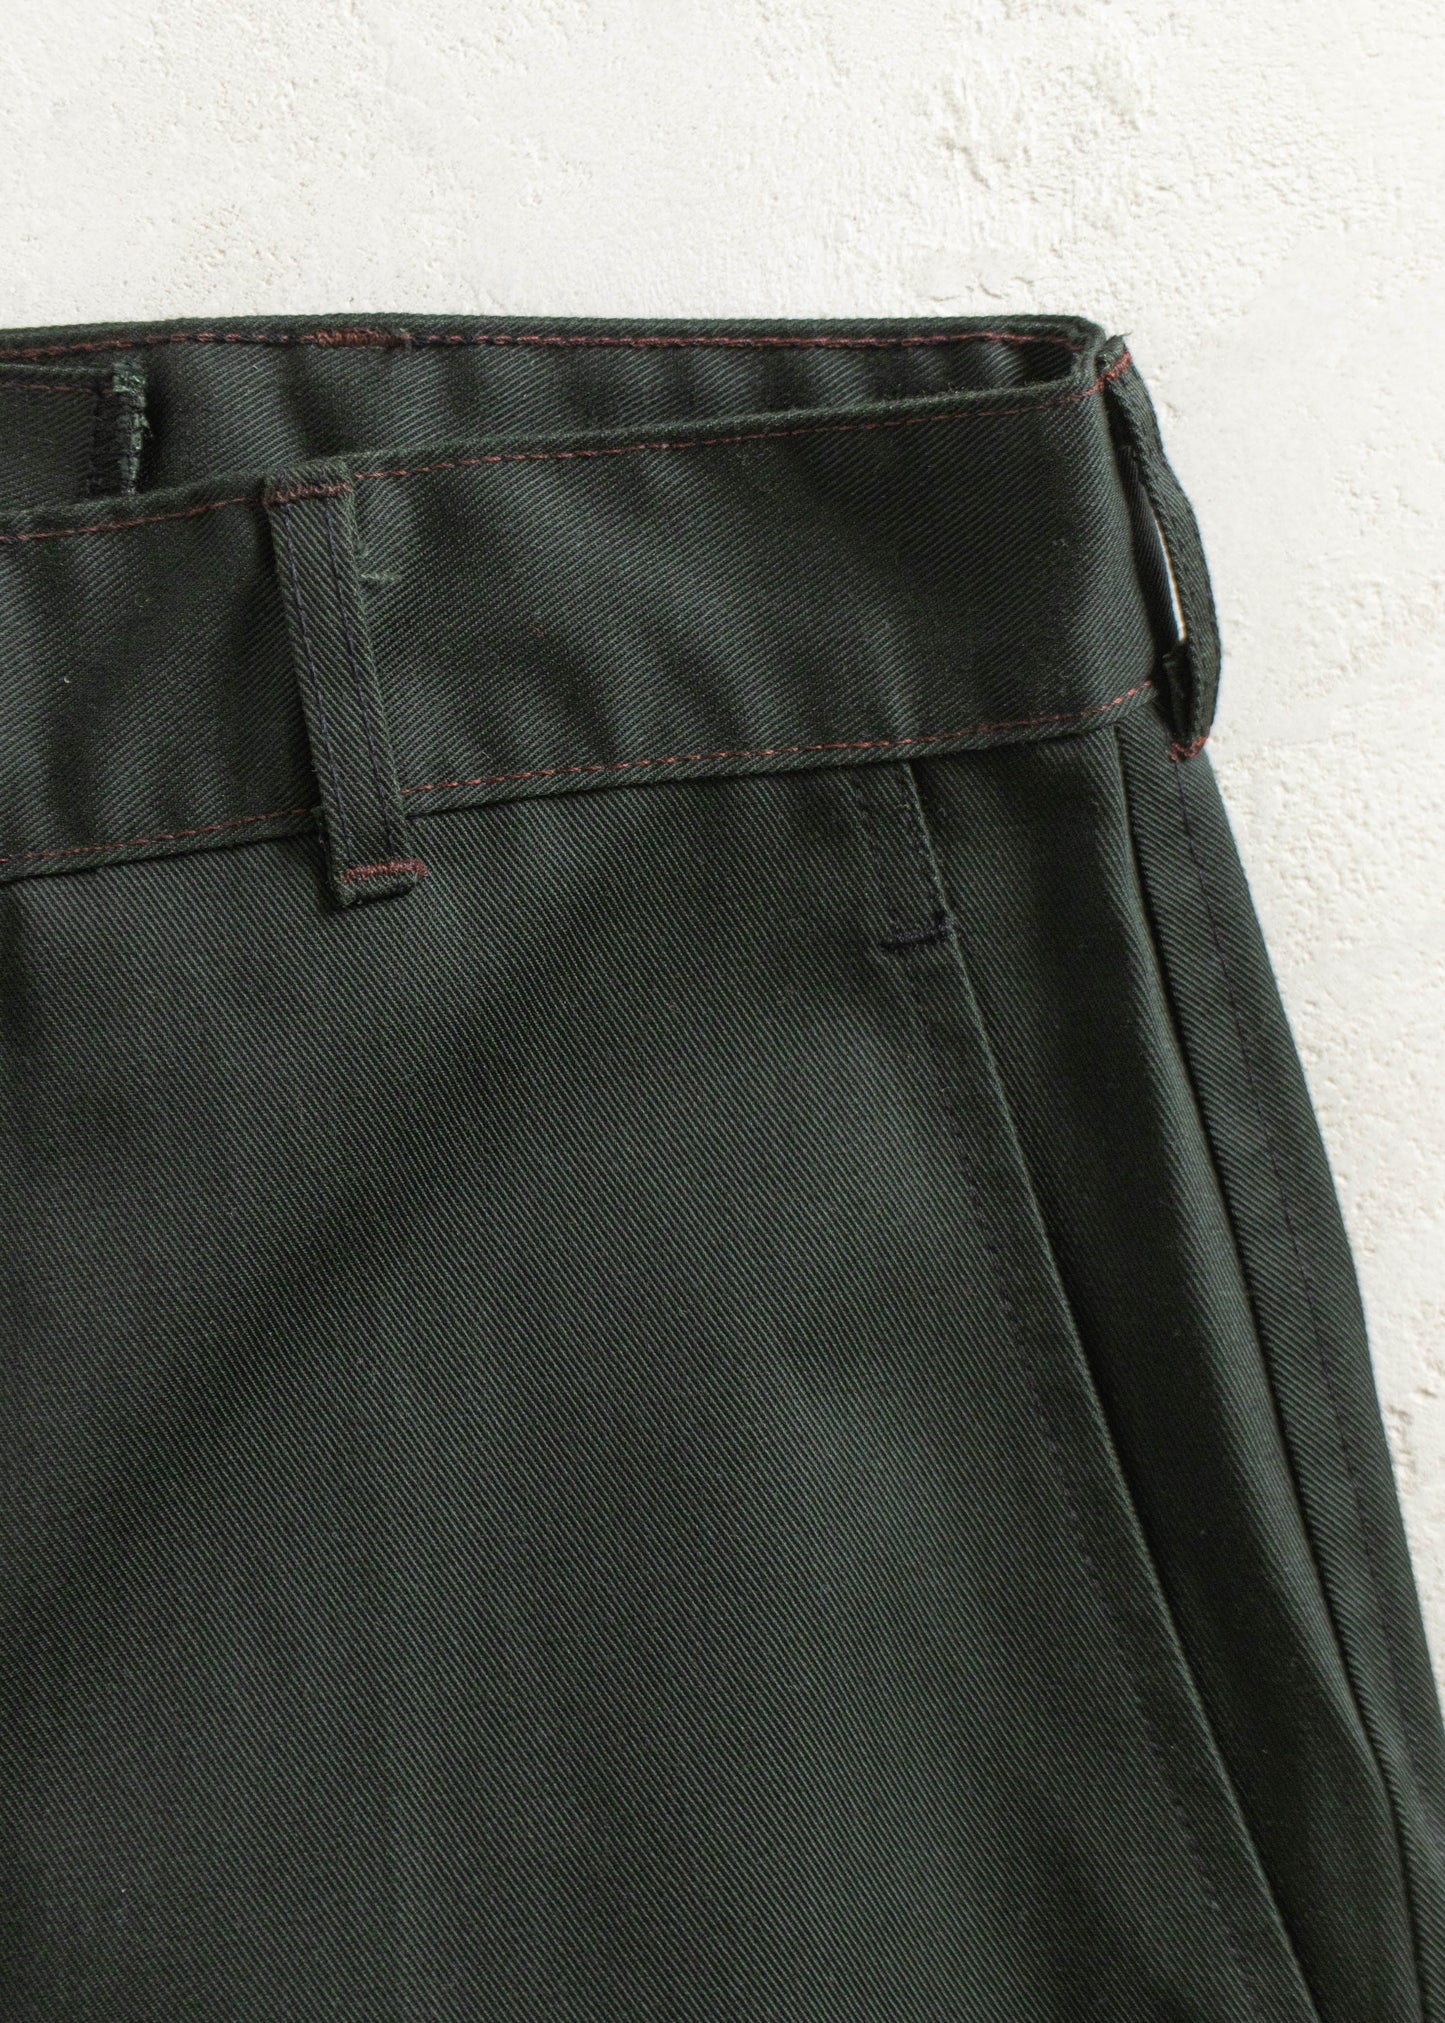 Vintage 1980s Military Cadet Pants Size Women's 27 Men's 30